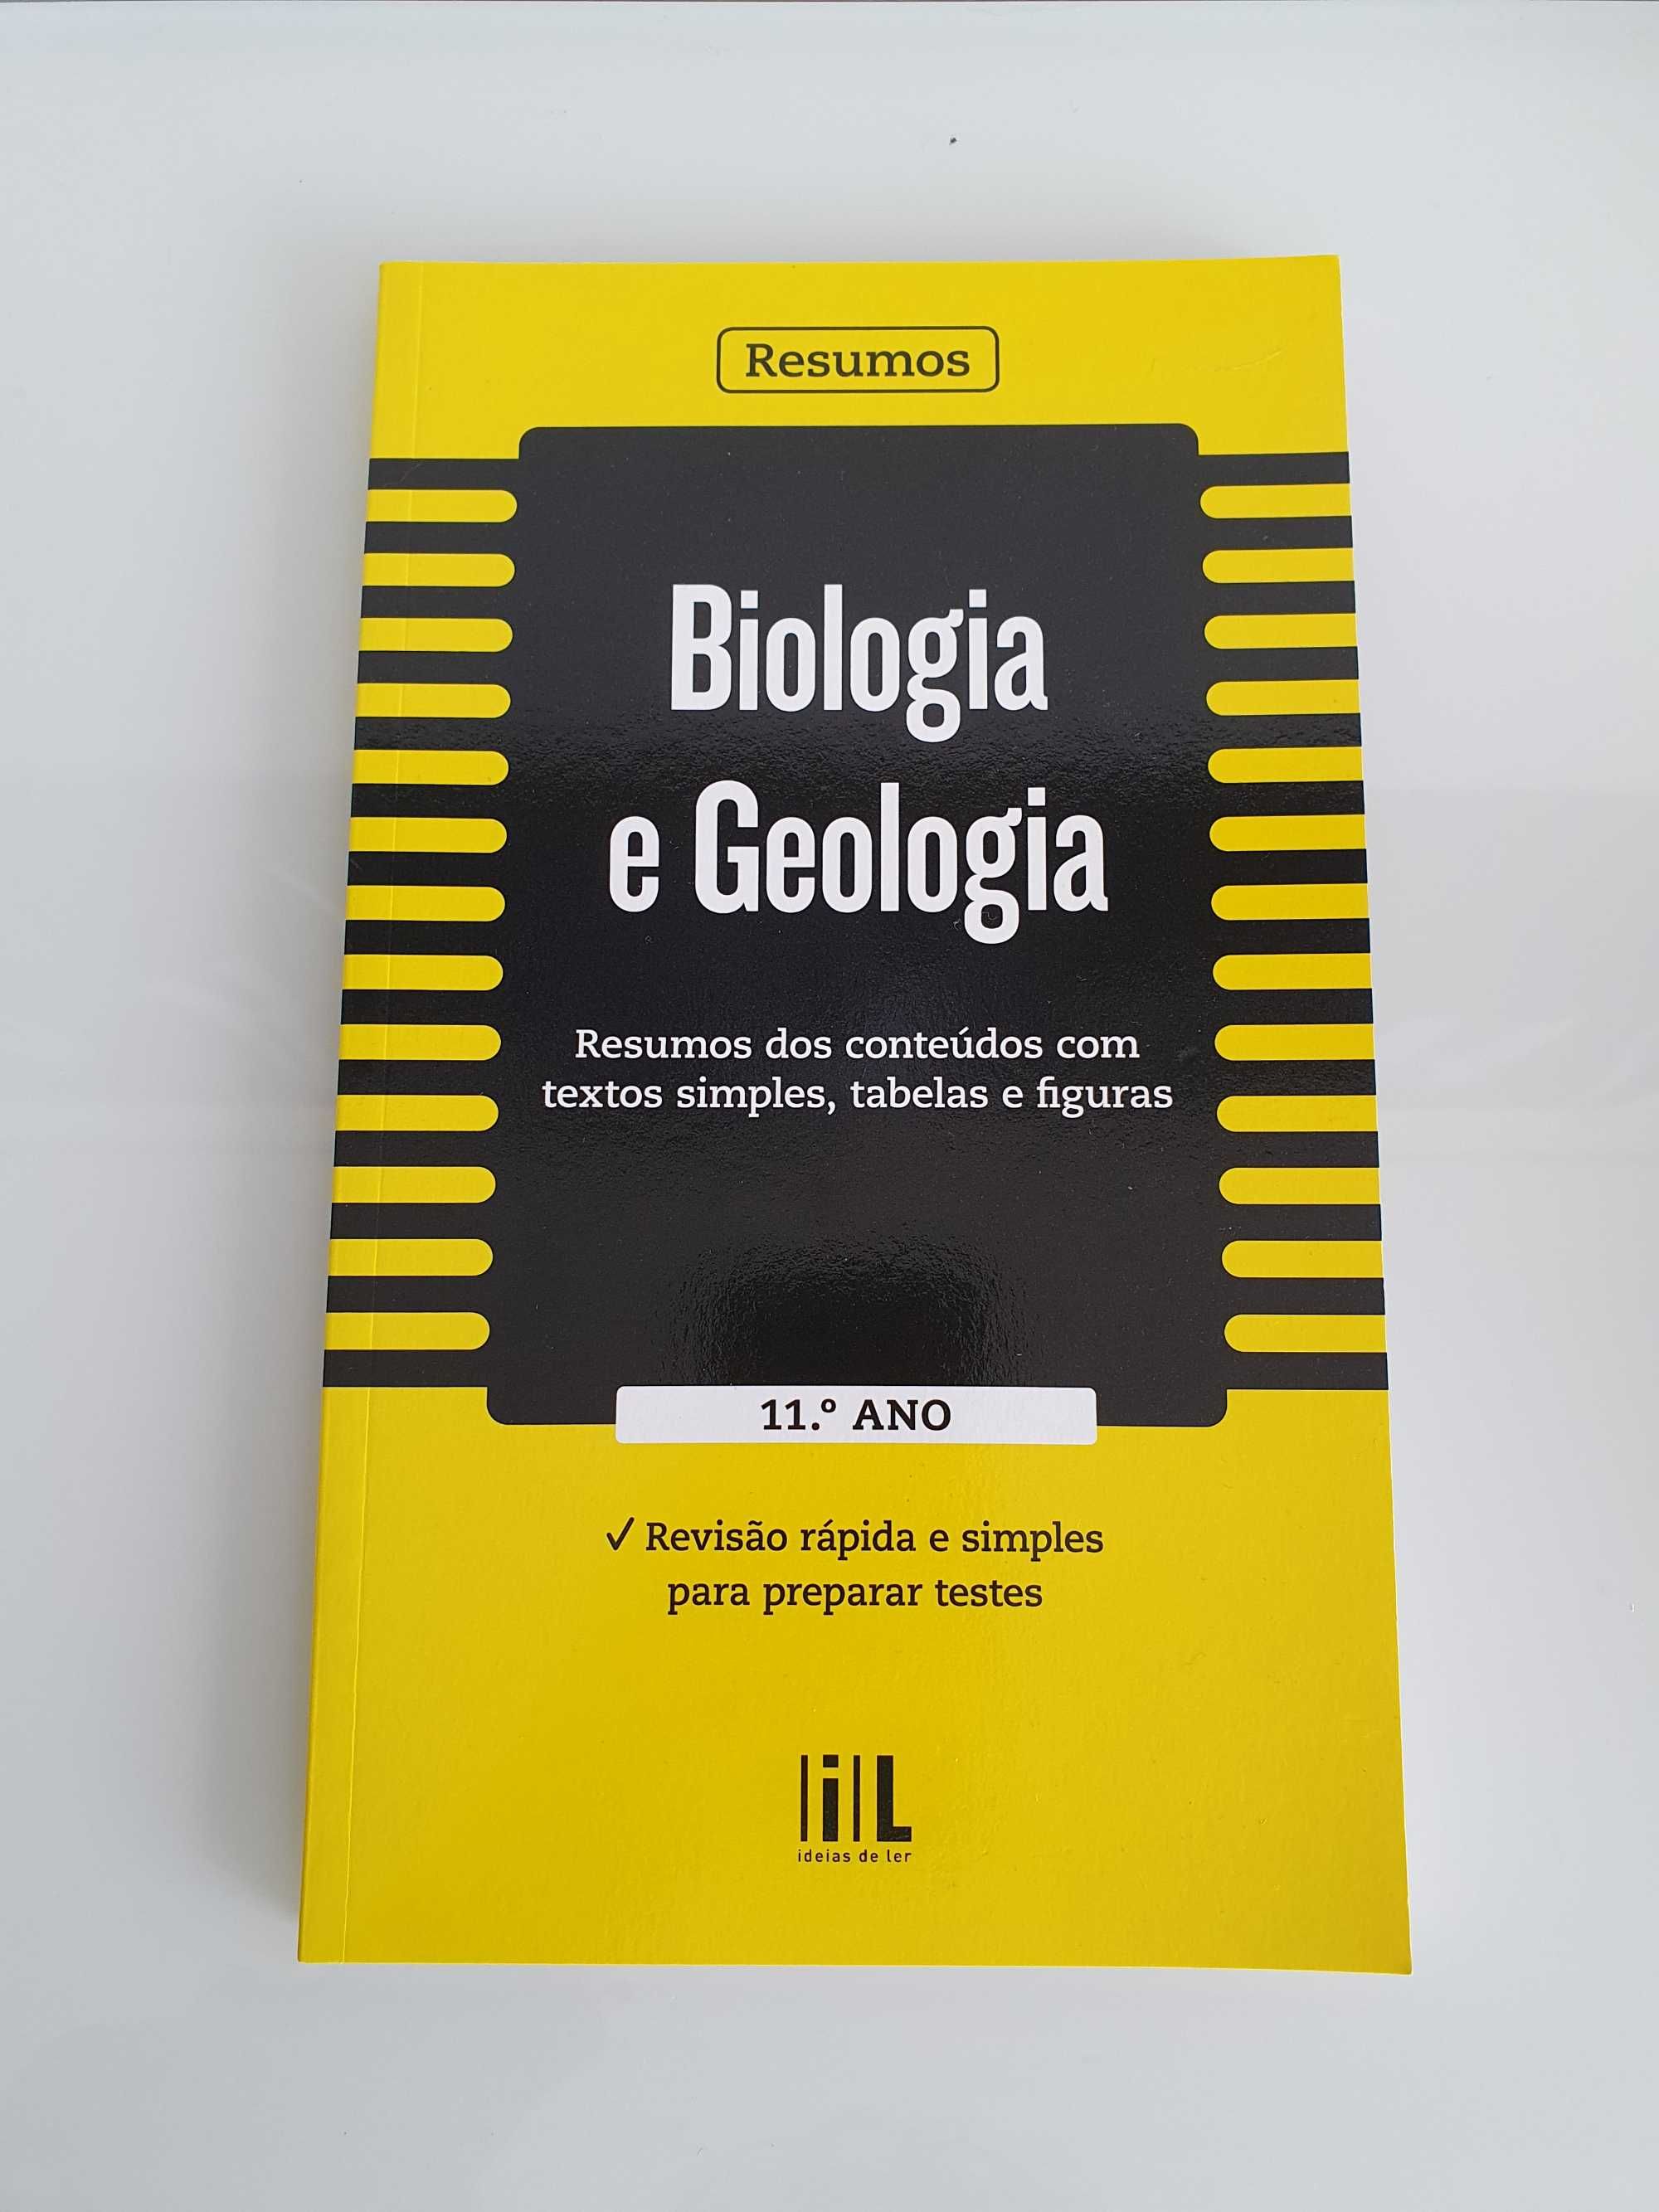 Livro "Resumos: Biologia e Geologia 11 ano"